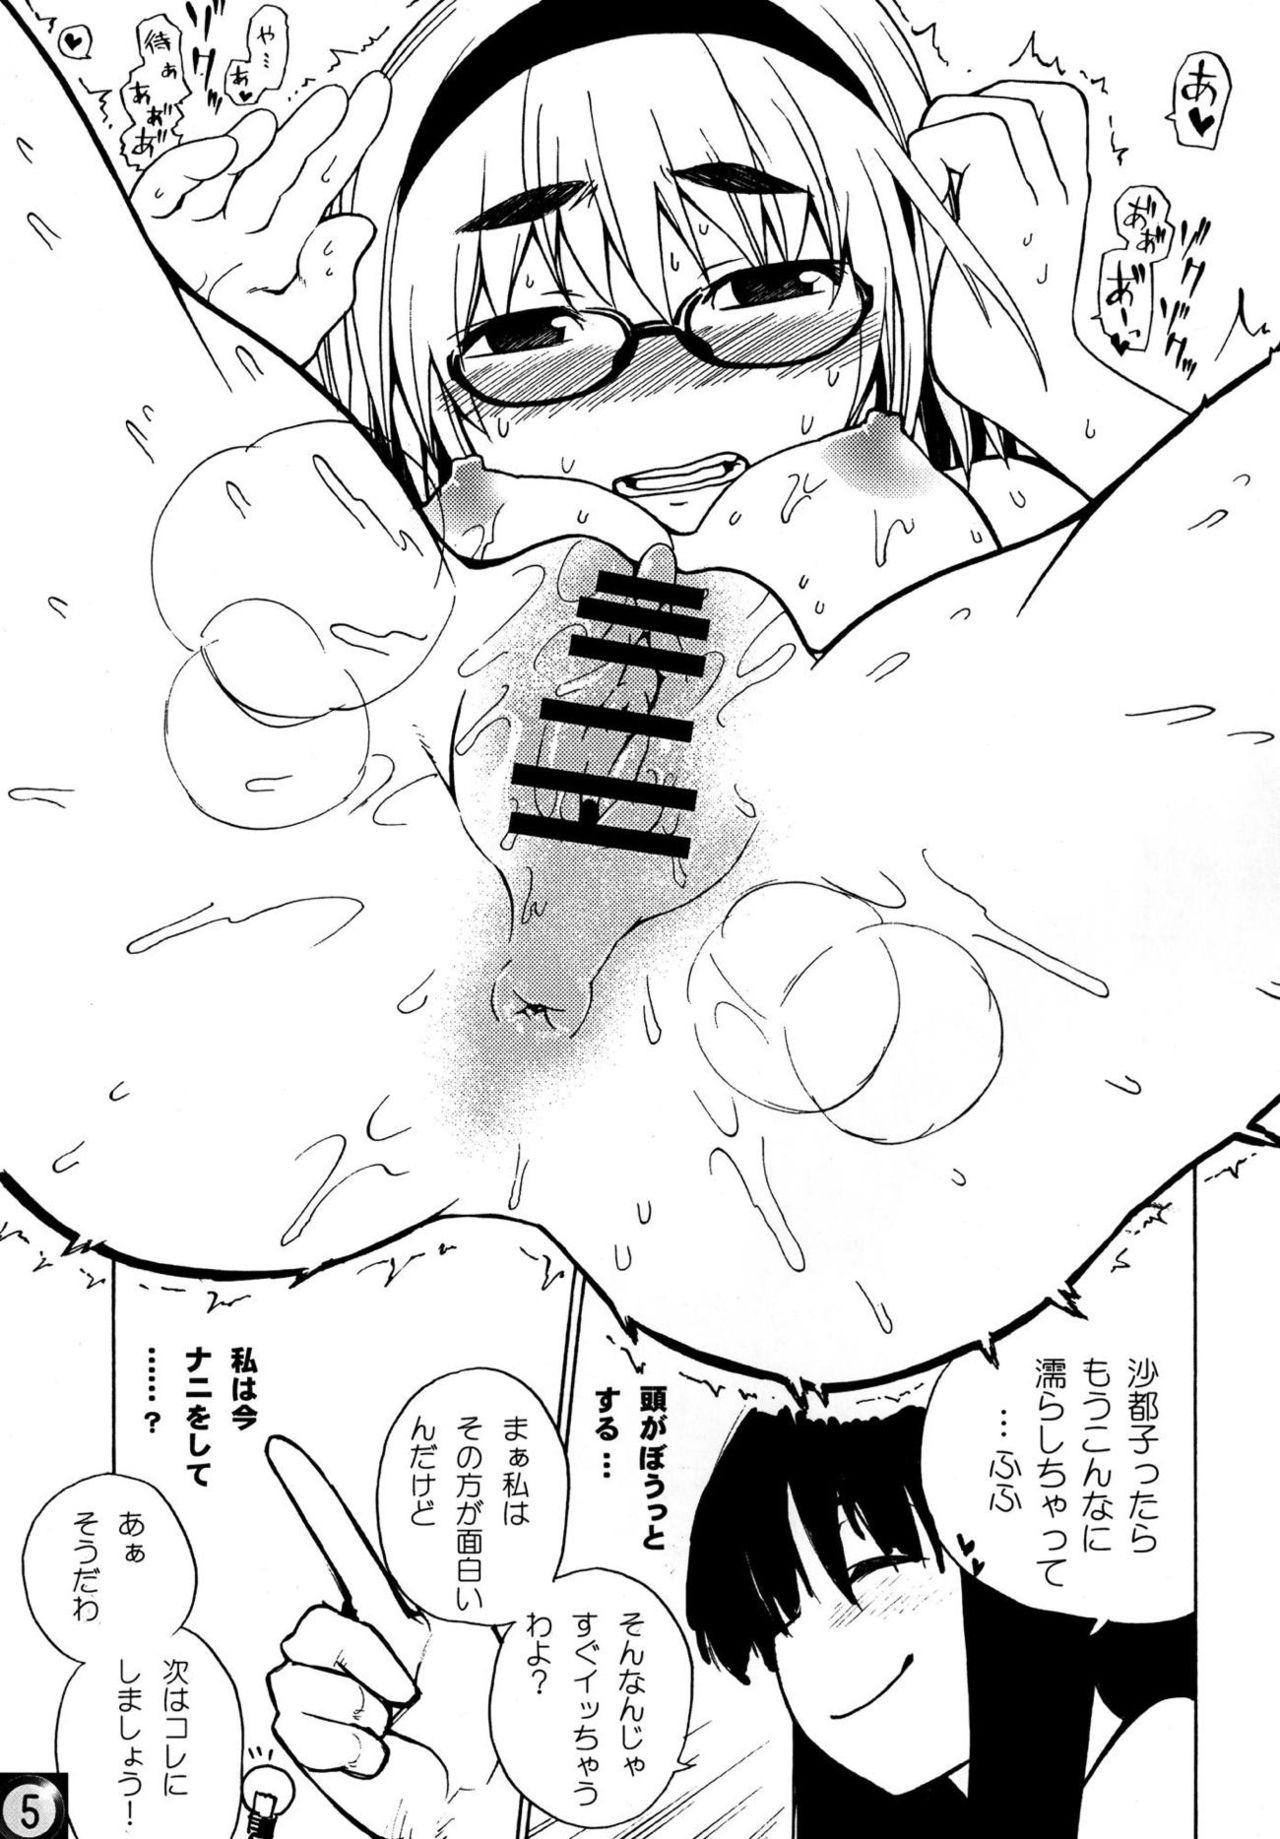 Toilet Ecchi ja Nai to Ikenai to Omoimasu!! - Higurashi no naku koro ni Gay Physicals - Page 4